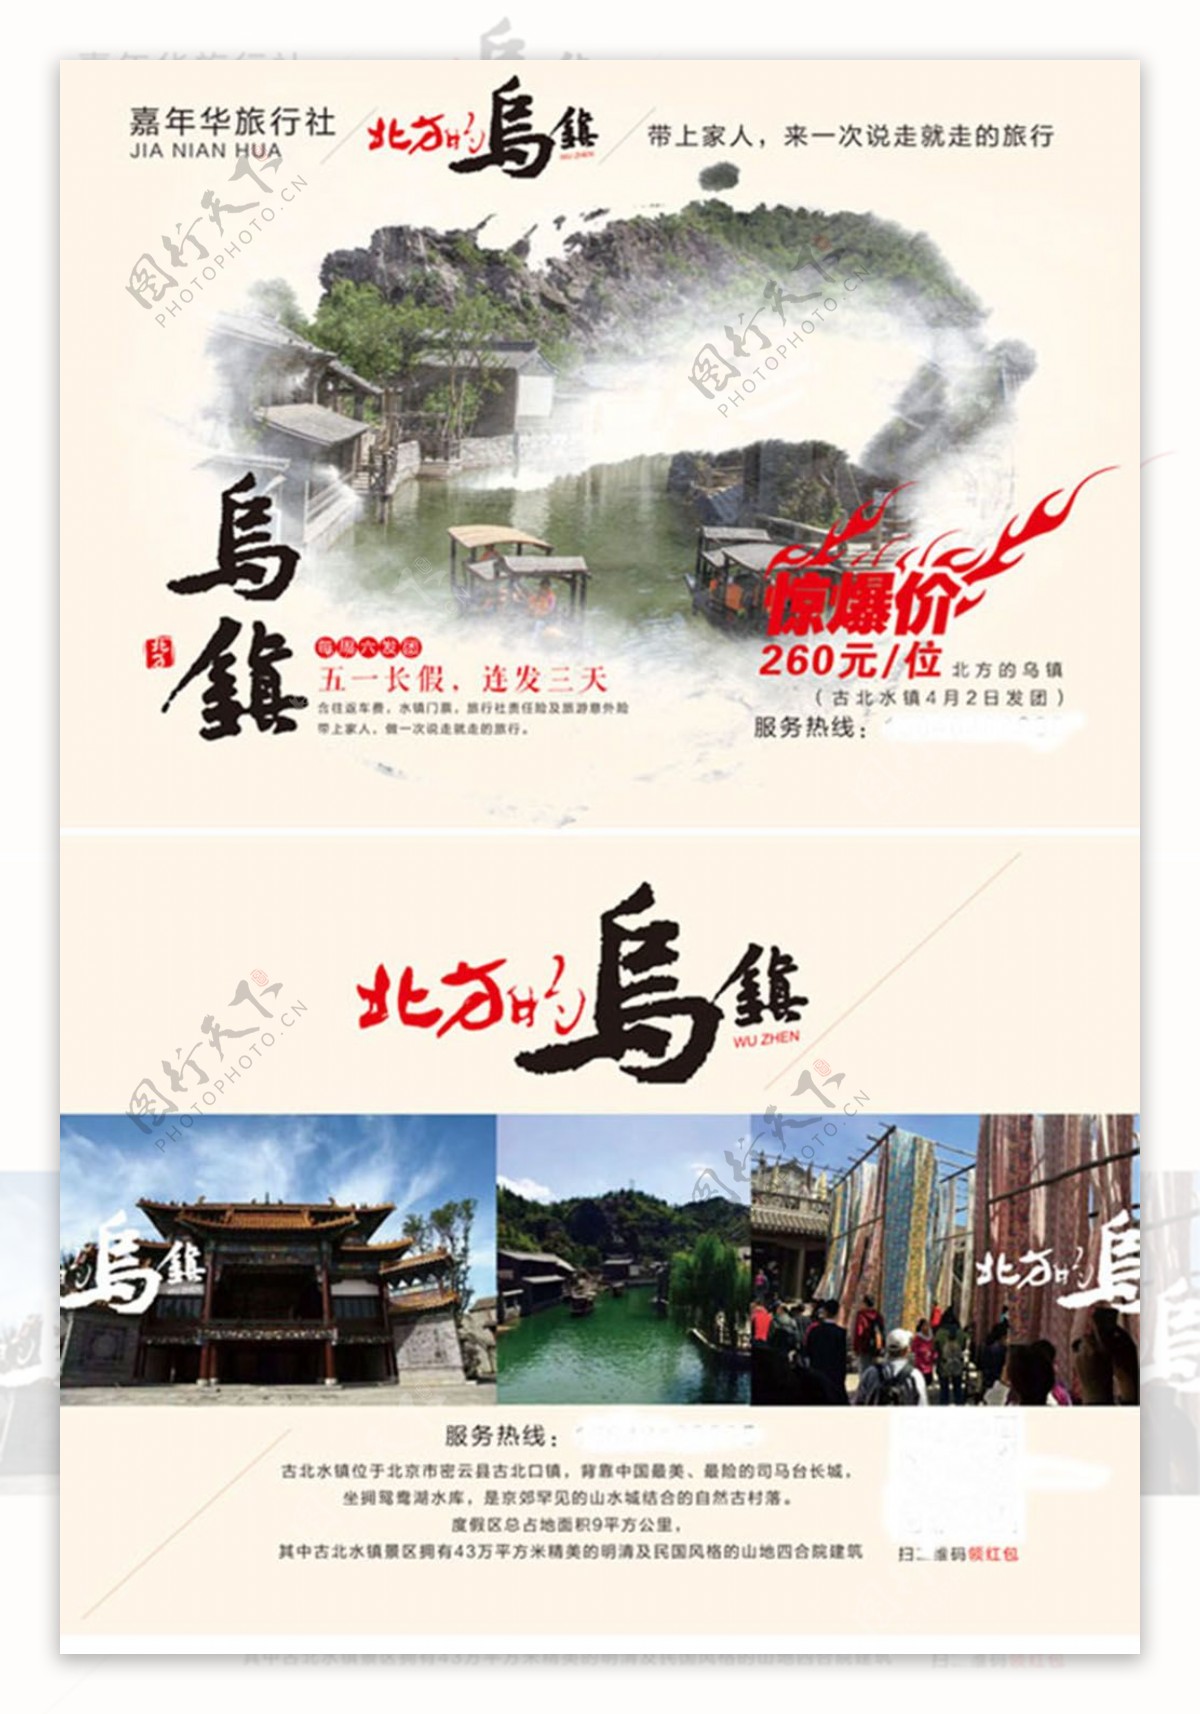 中国风乌镇旅游宣传单